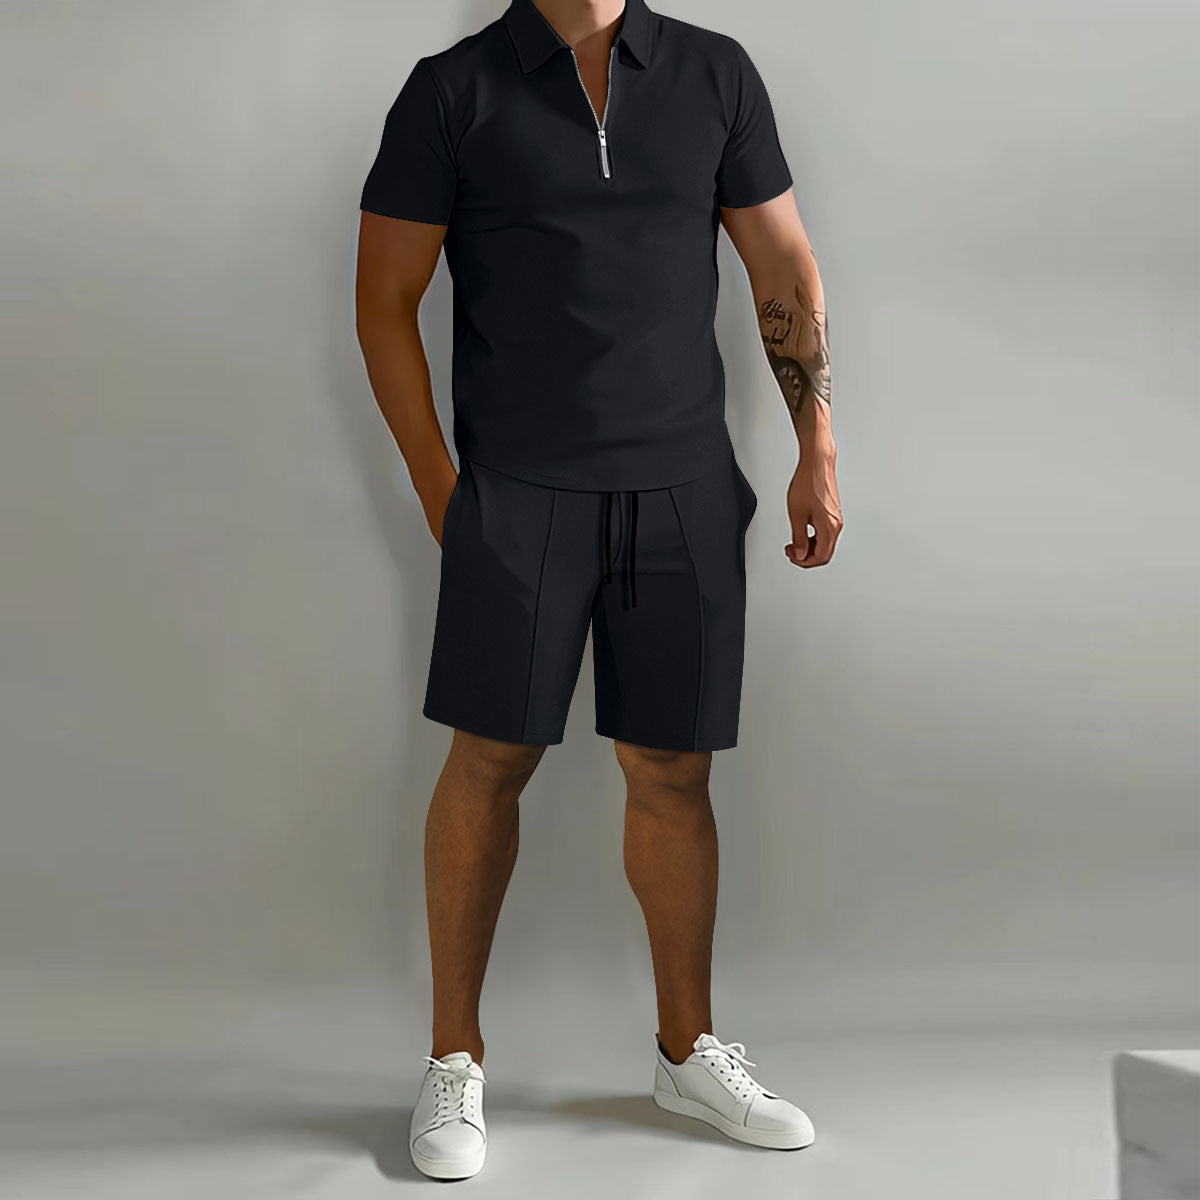 James™ Slim fit overhemd met rits en broek heren zomerset